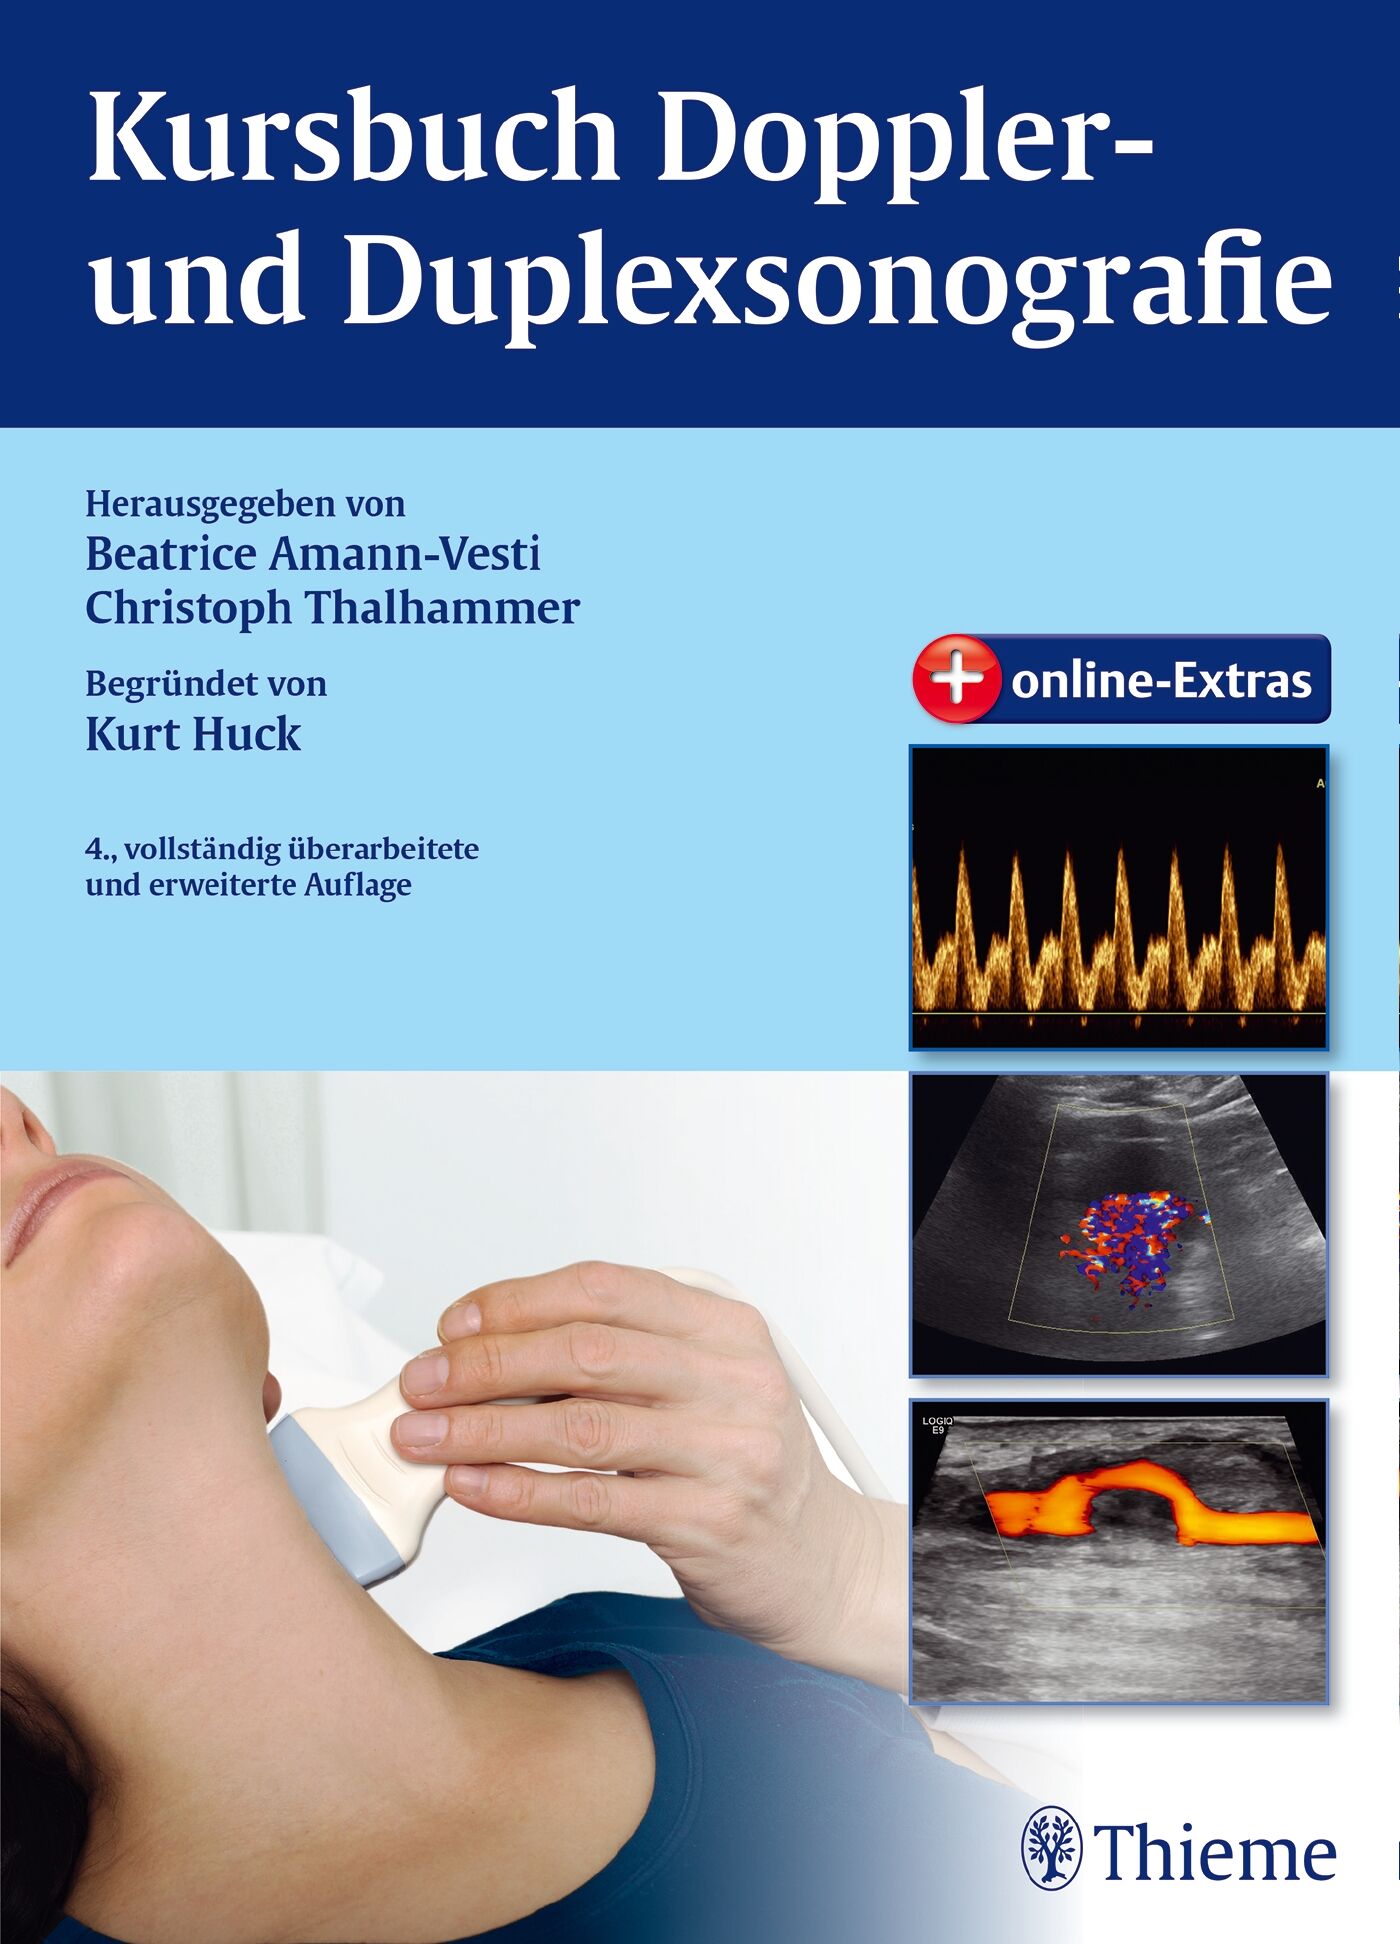 Kursbuch Doppler- und Duplexsonografie, 9783131693341